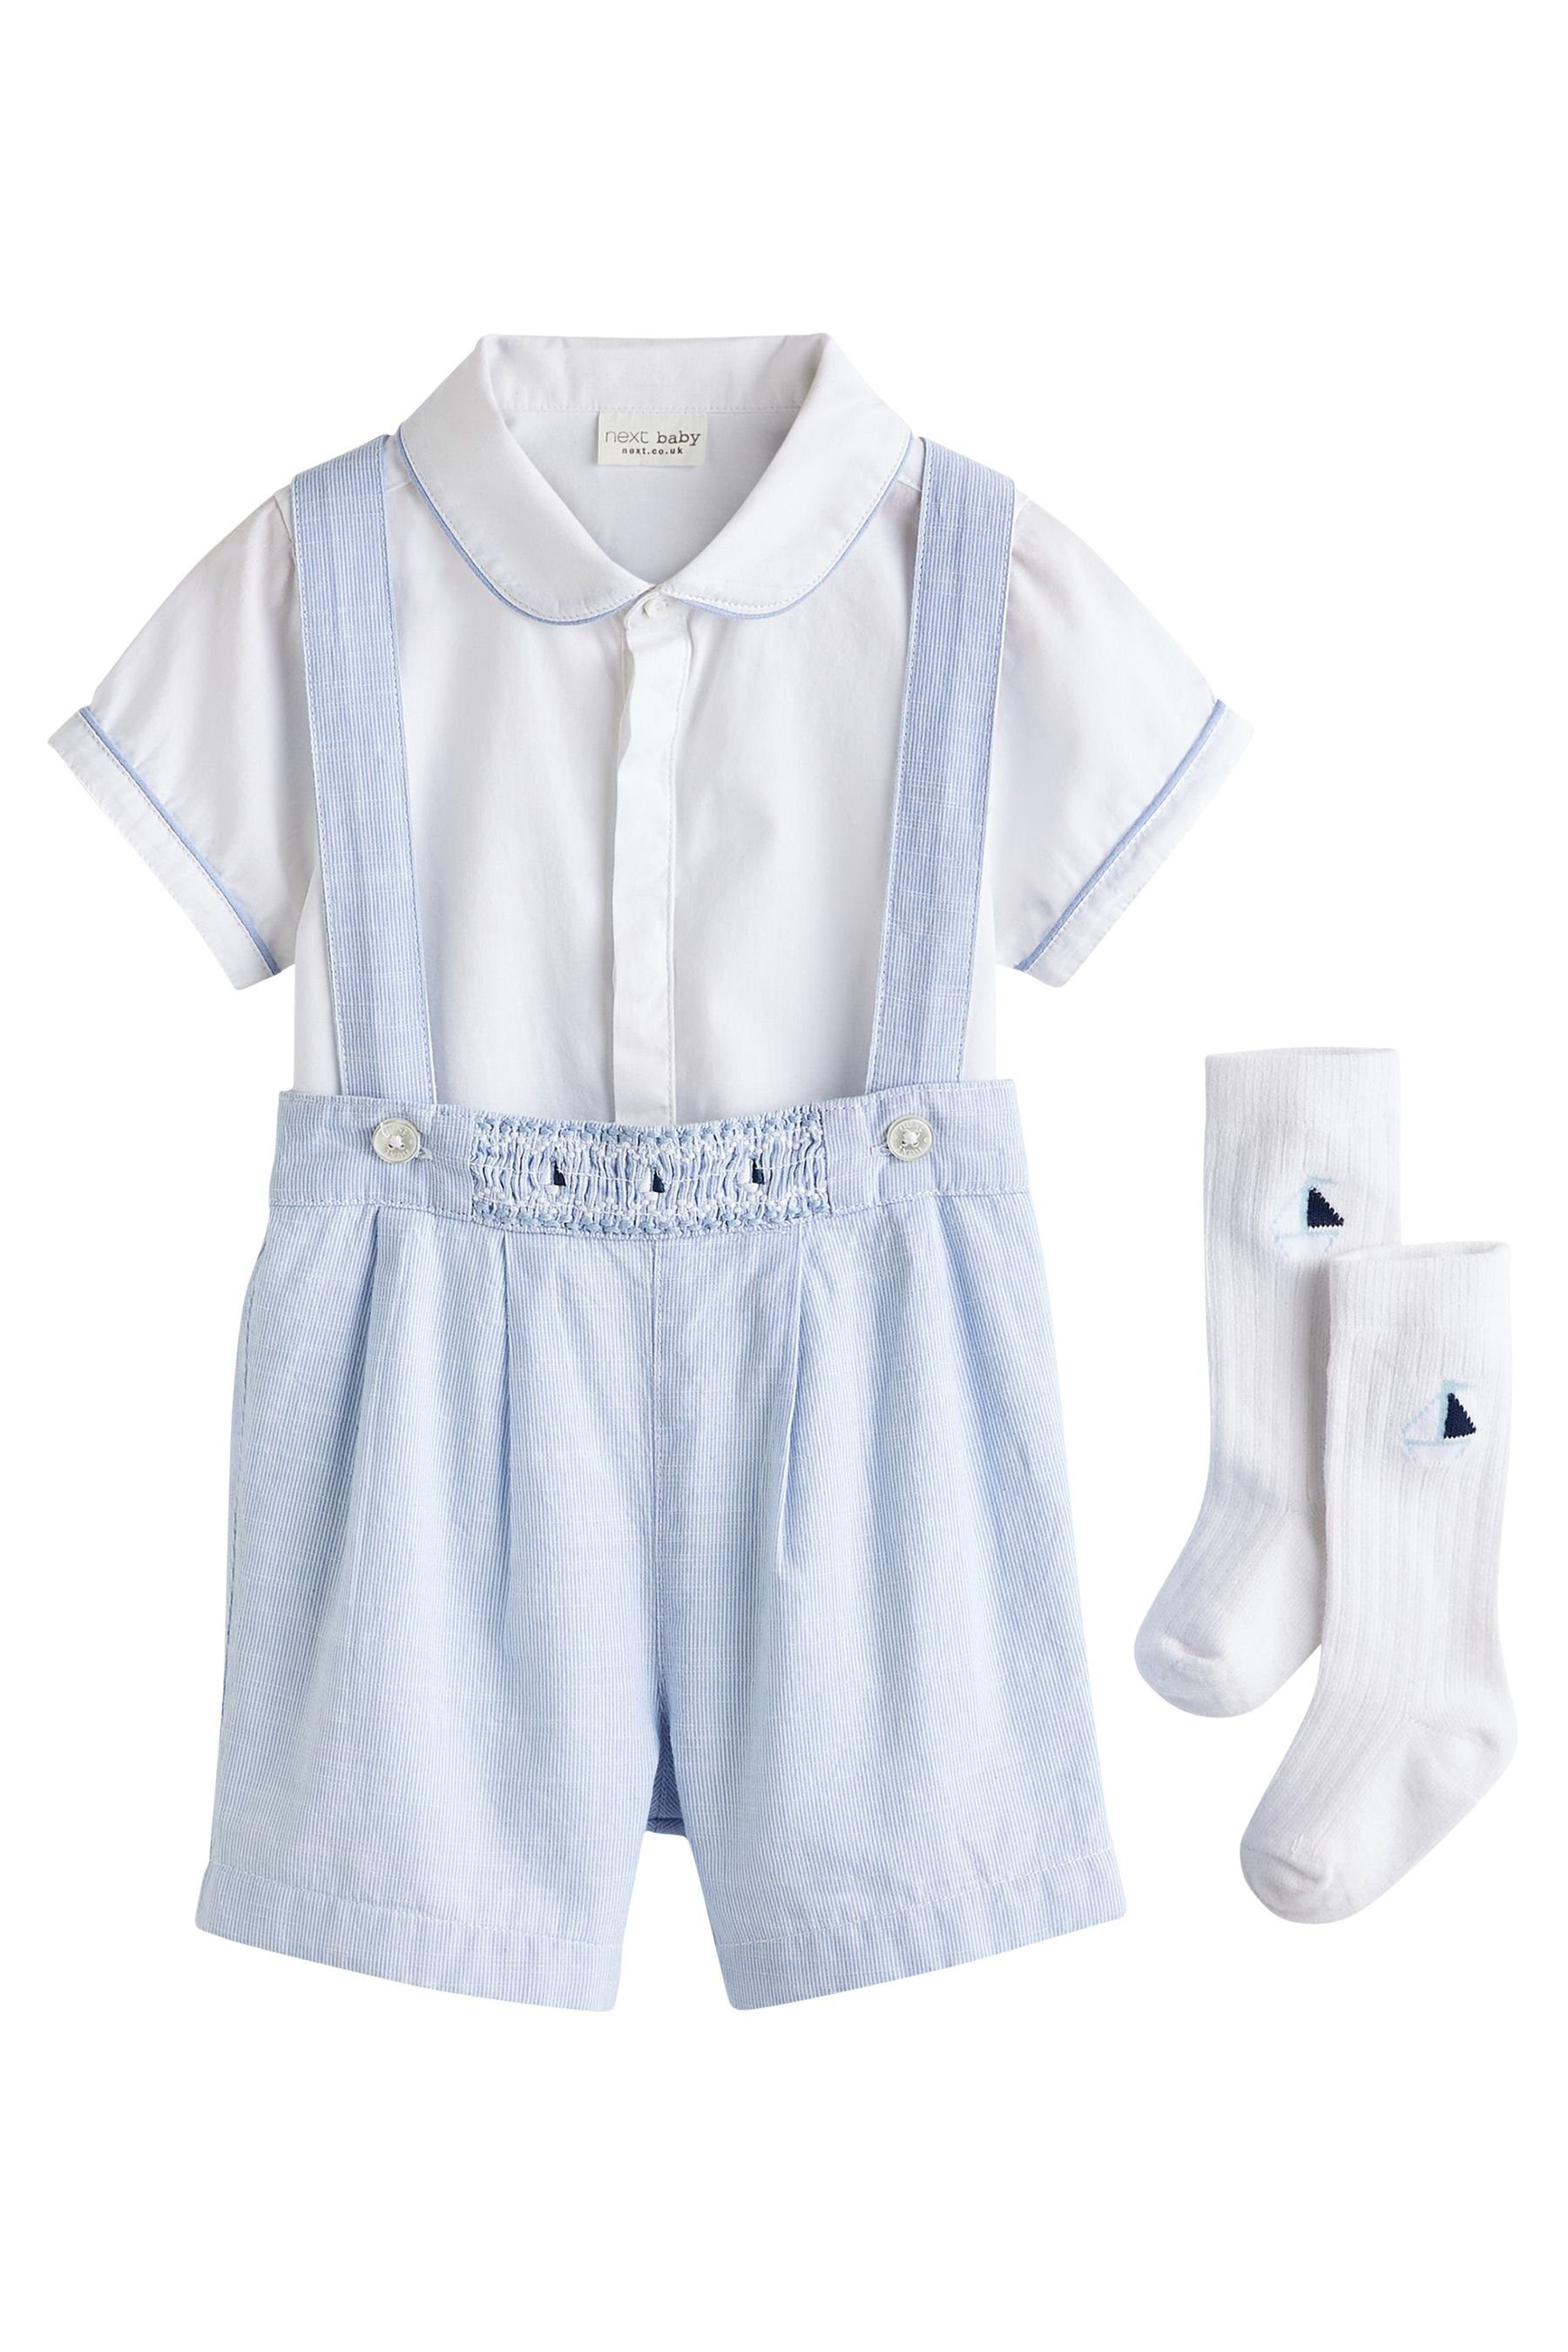 Next Hemd & Hose Babyset mit elegantem Hemd, kurzer Hose und Socken (3-tlg) Pale Blue